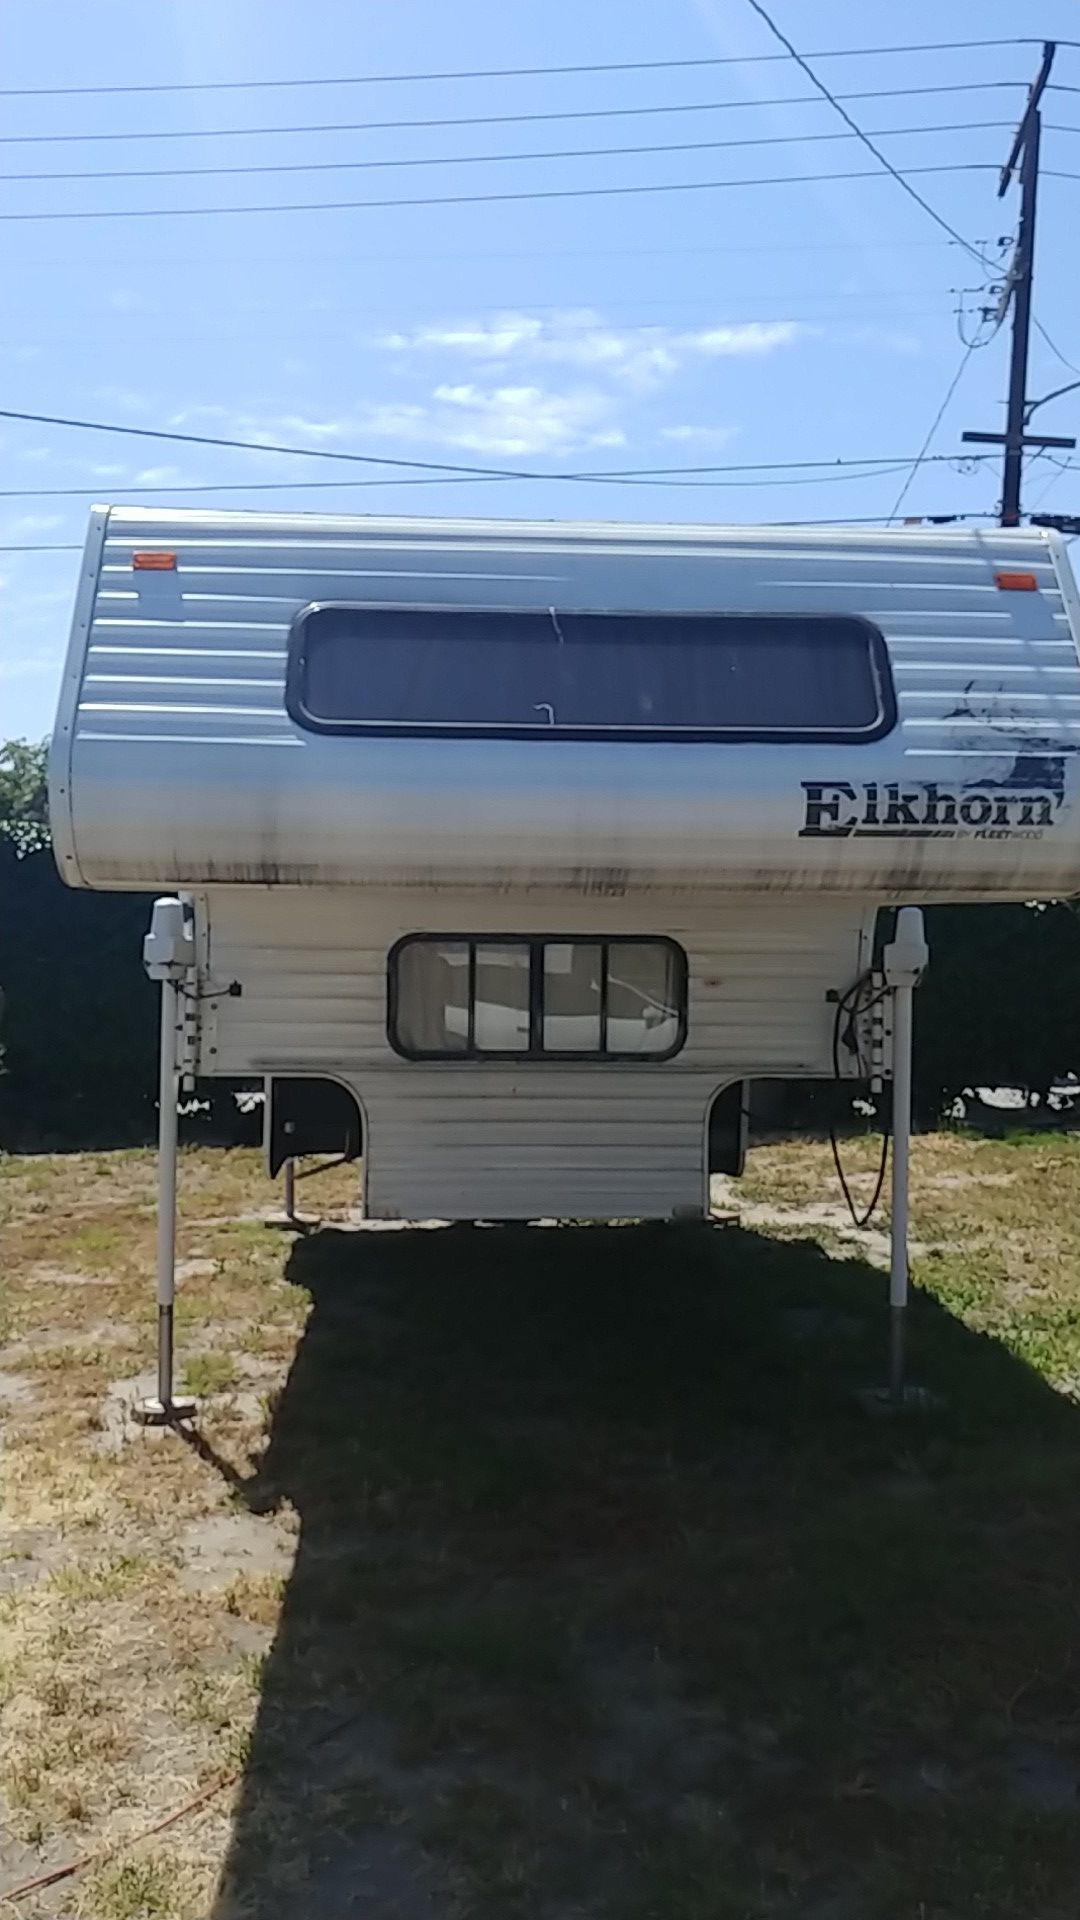 Truck Camper 13' Elkhorn